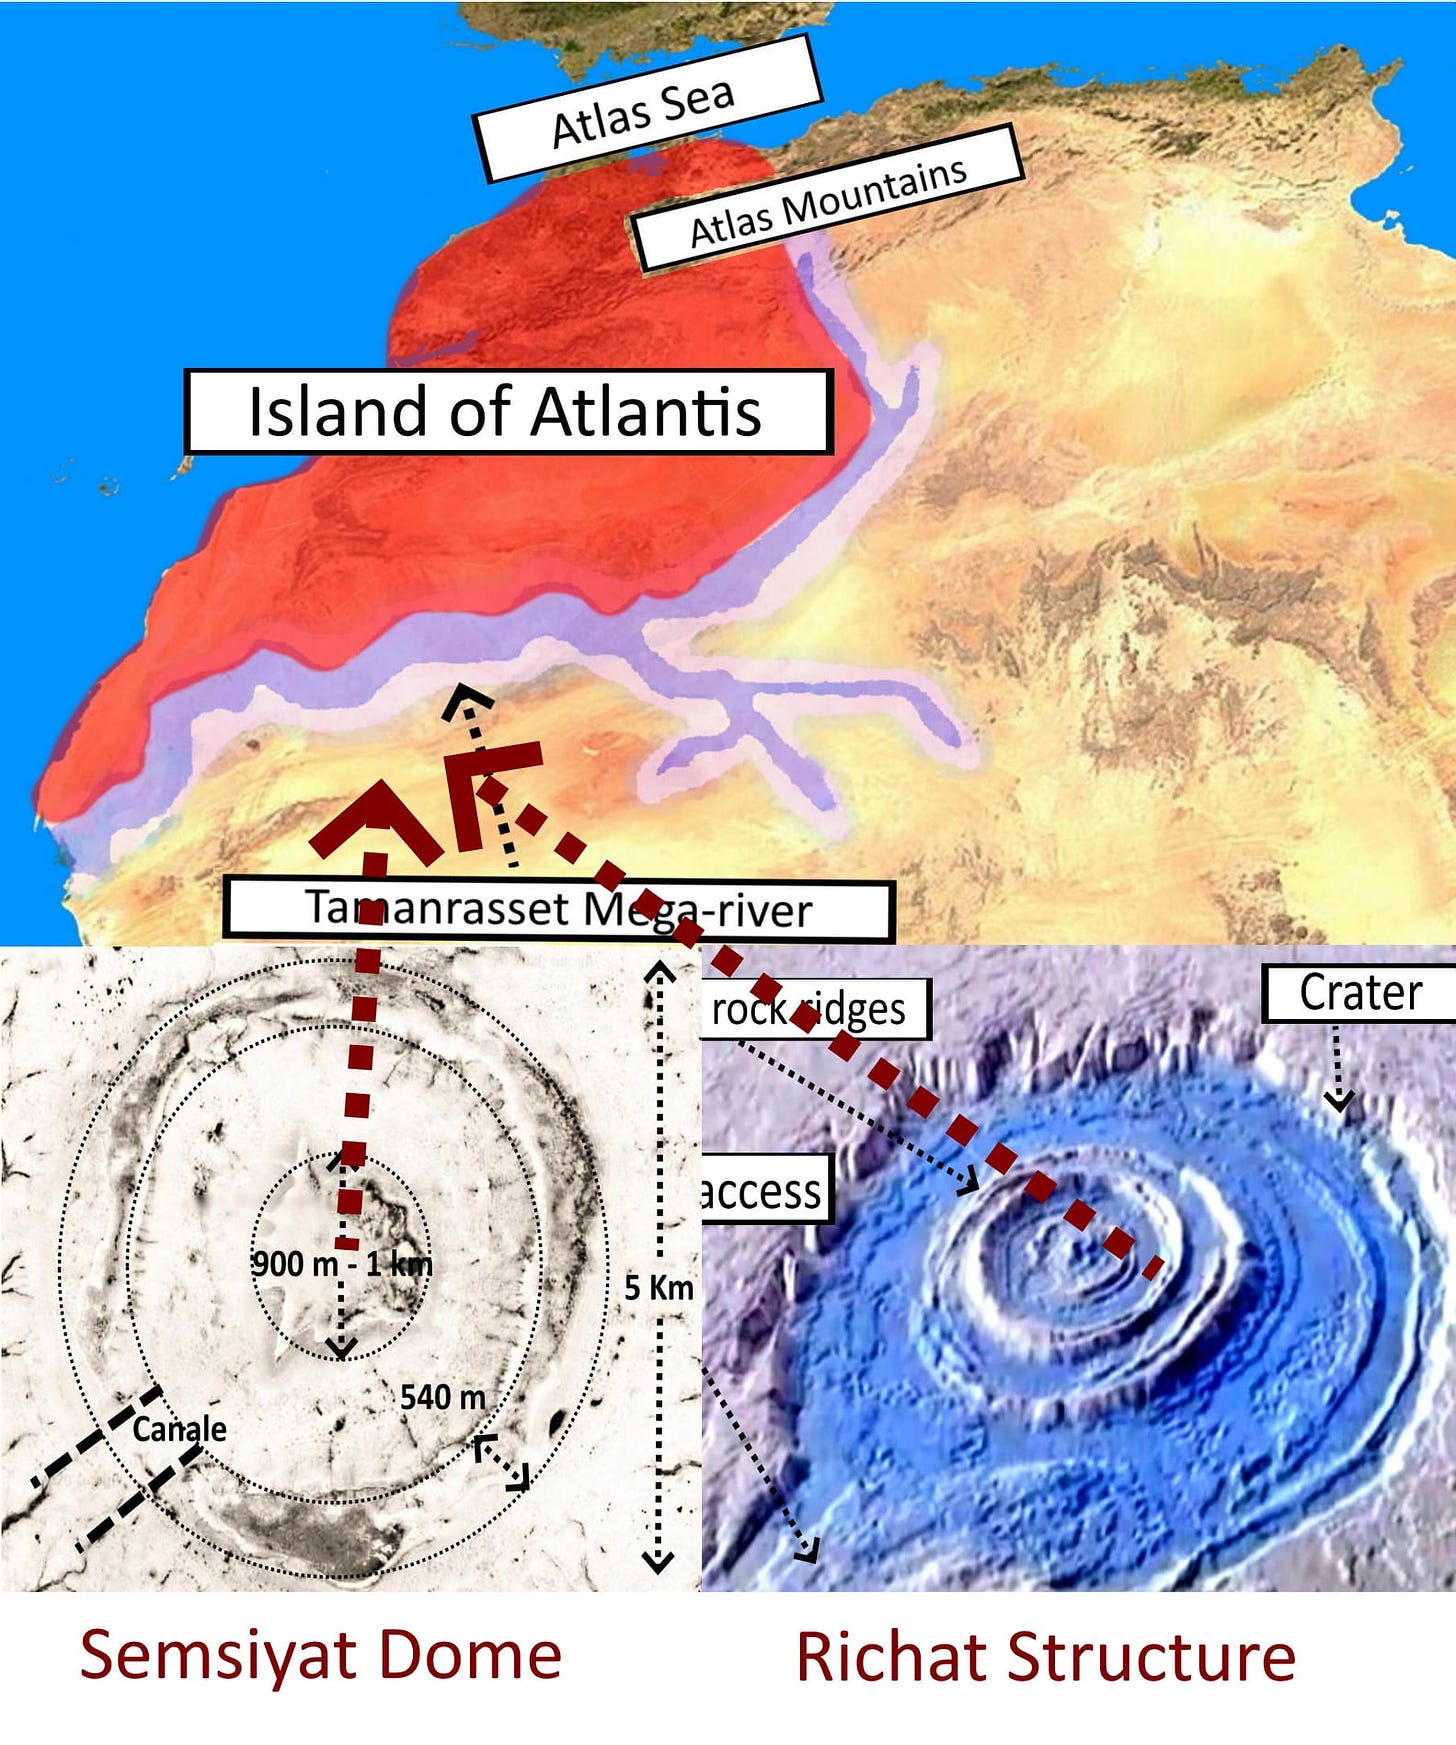 Peut être un graphique de carte et texte : « Atlas AtlasSe Sea Atlas Mountains of Atlantis Tamanrasset M Mega-river -river rocksidges rock Crater 900 m. access 5Km Canale 540 m Semsiyat Dome Richat Structure »